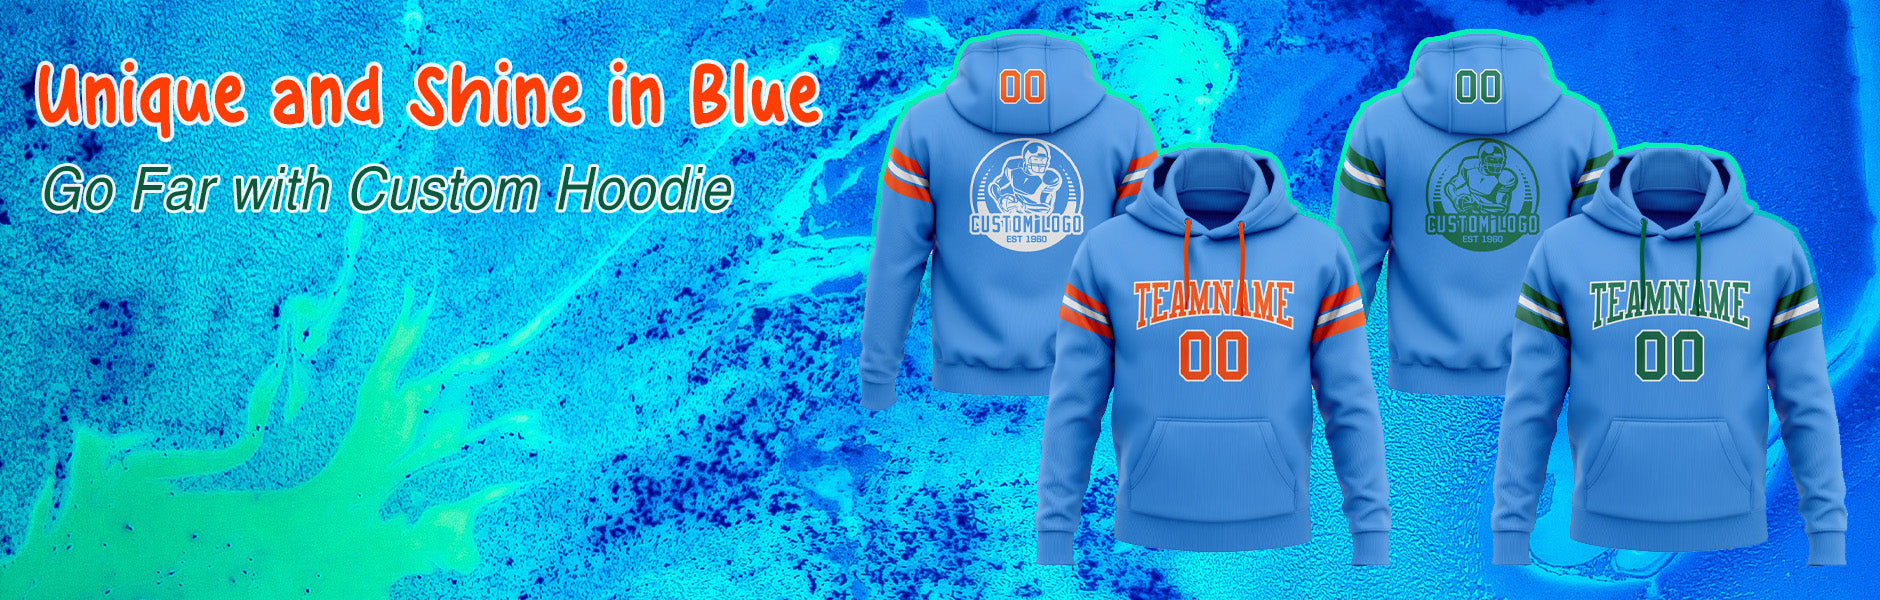 custom hoodie electric blue